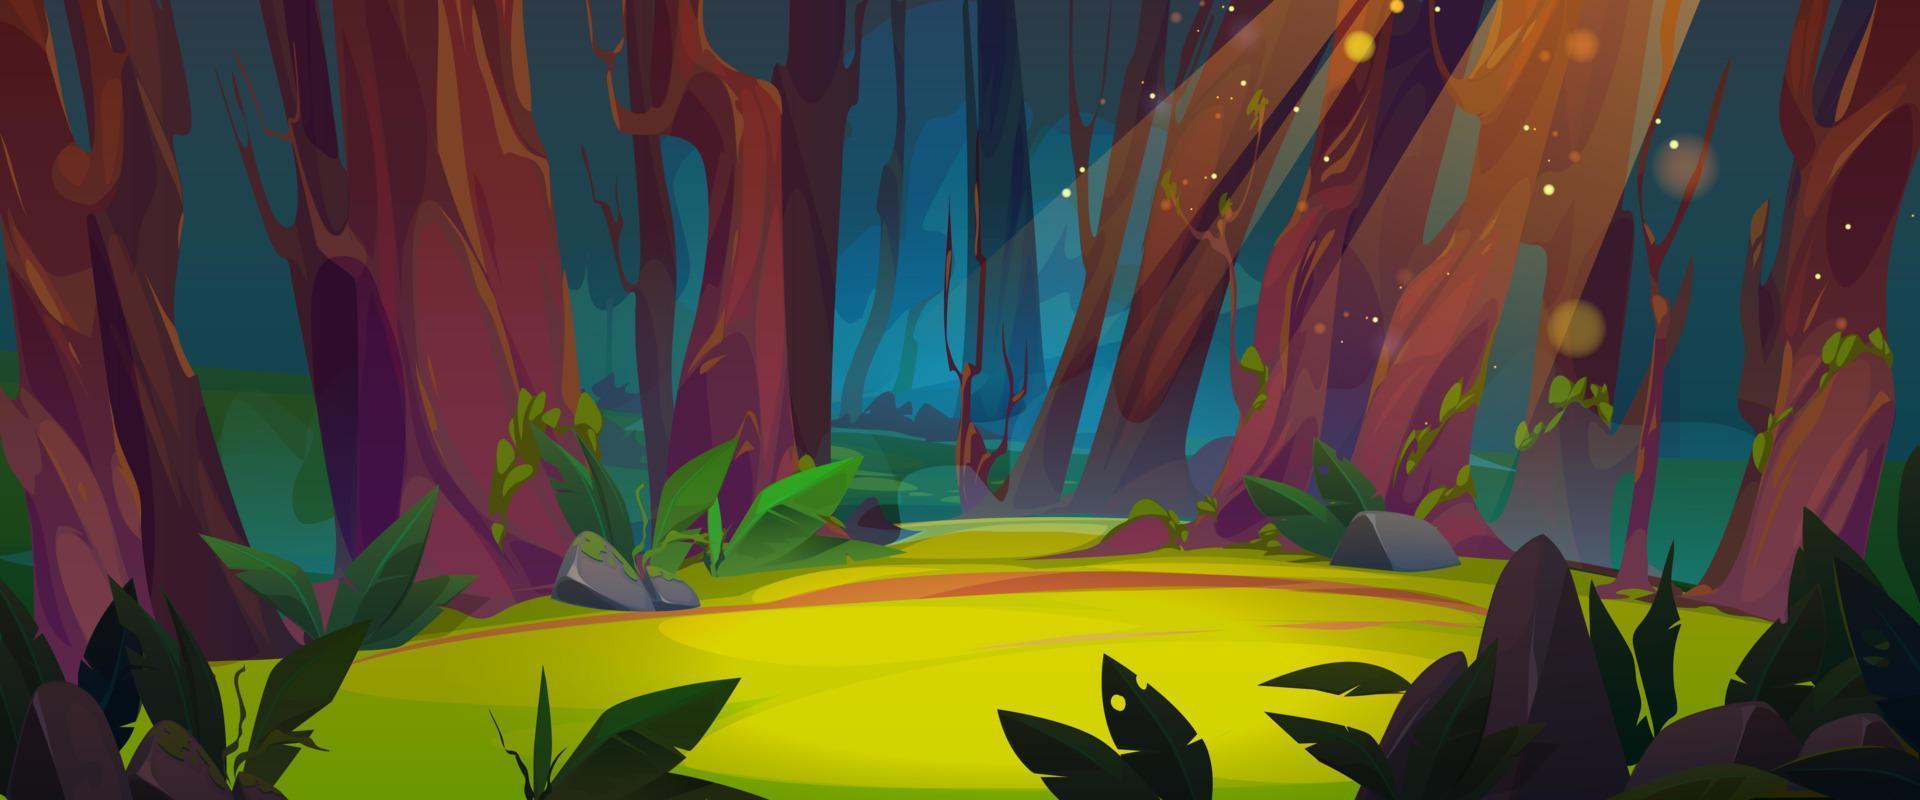 fantasia floresta clareira desenho animado Magia ilustração vetor